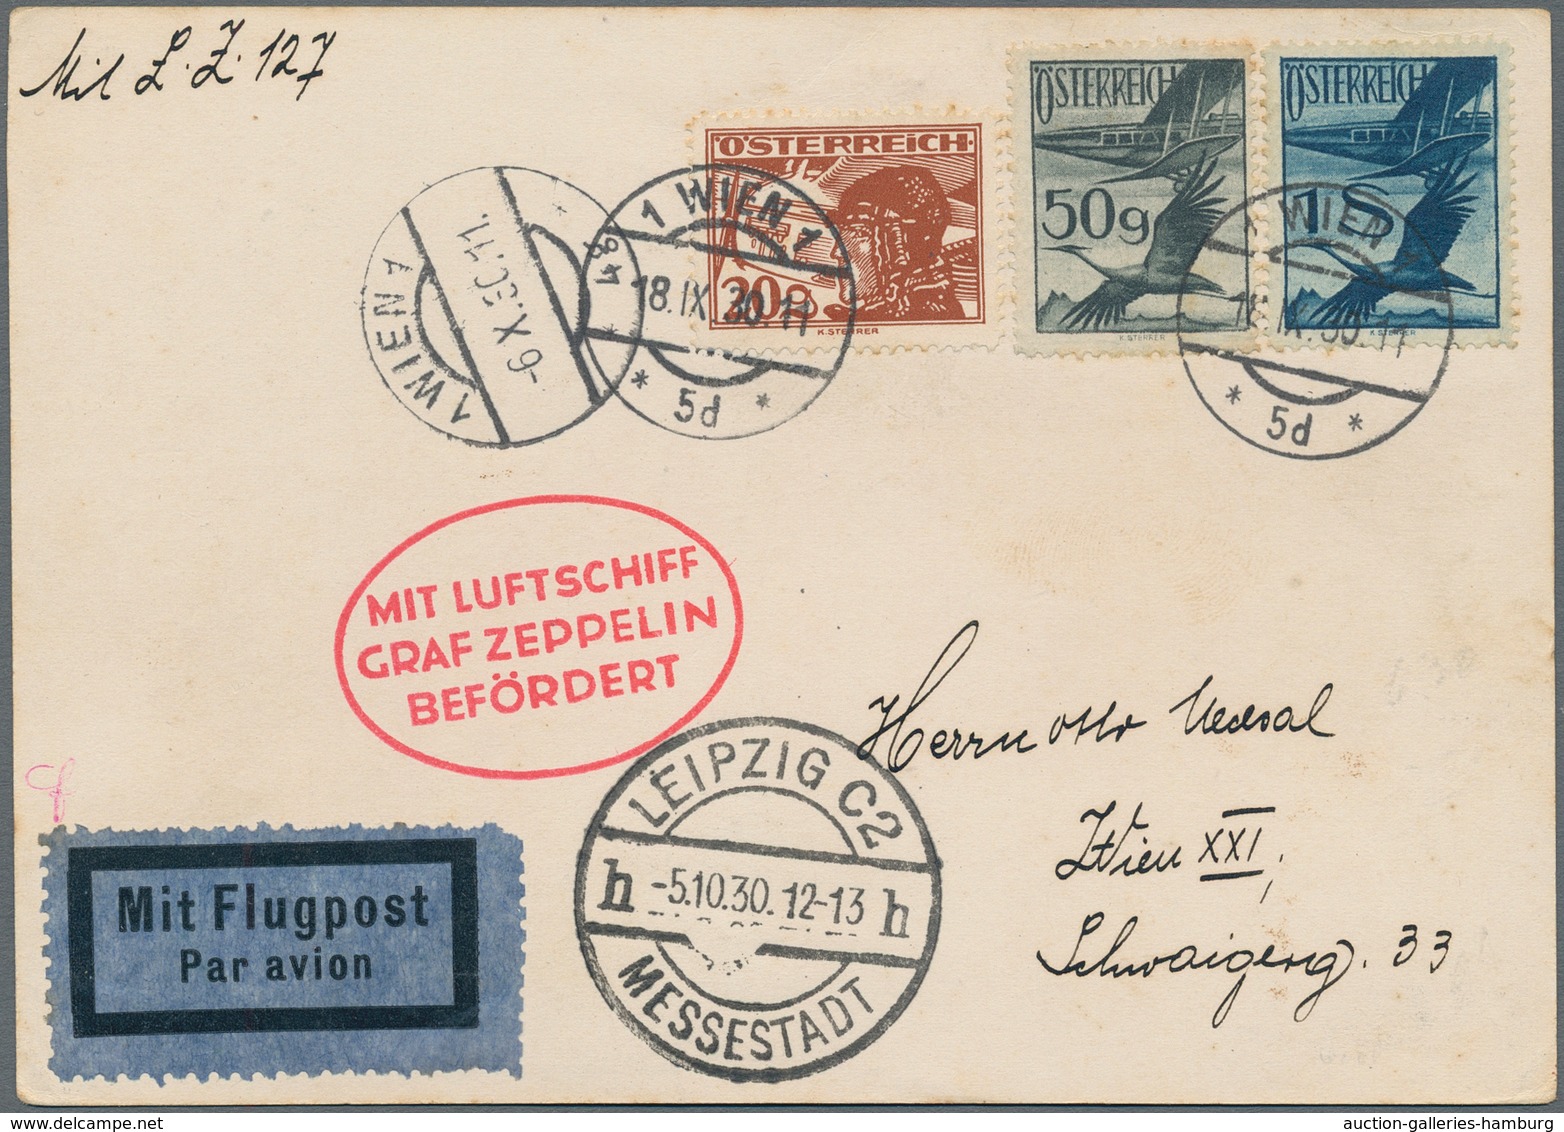 Zeppelinpost Europa: 1930, Fahrt Nach Leipzig, Österreichische Post, Karte Mit Flugpost-Frankatur Ab - Sonstige - Europa